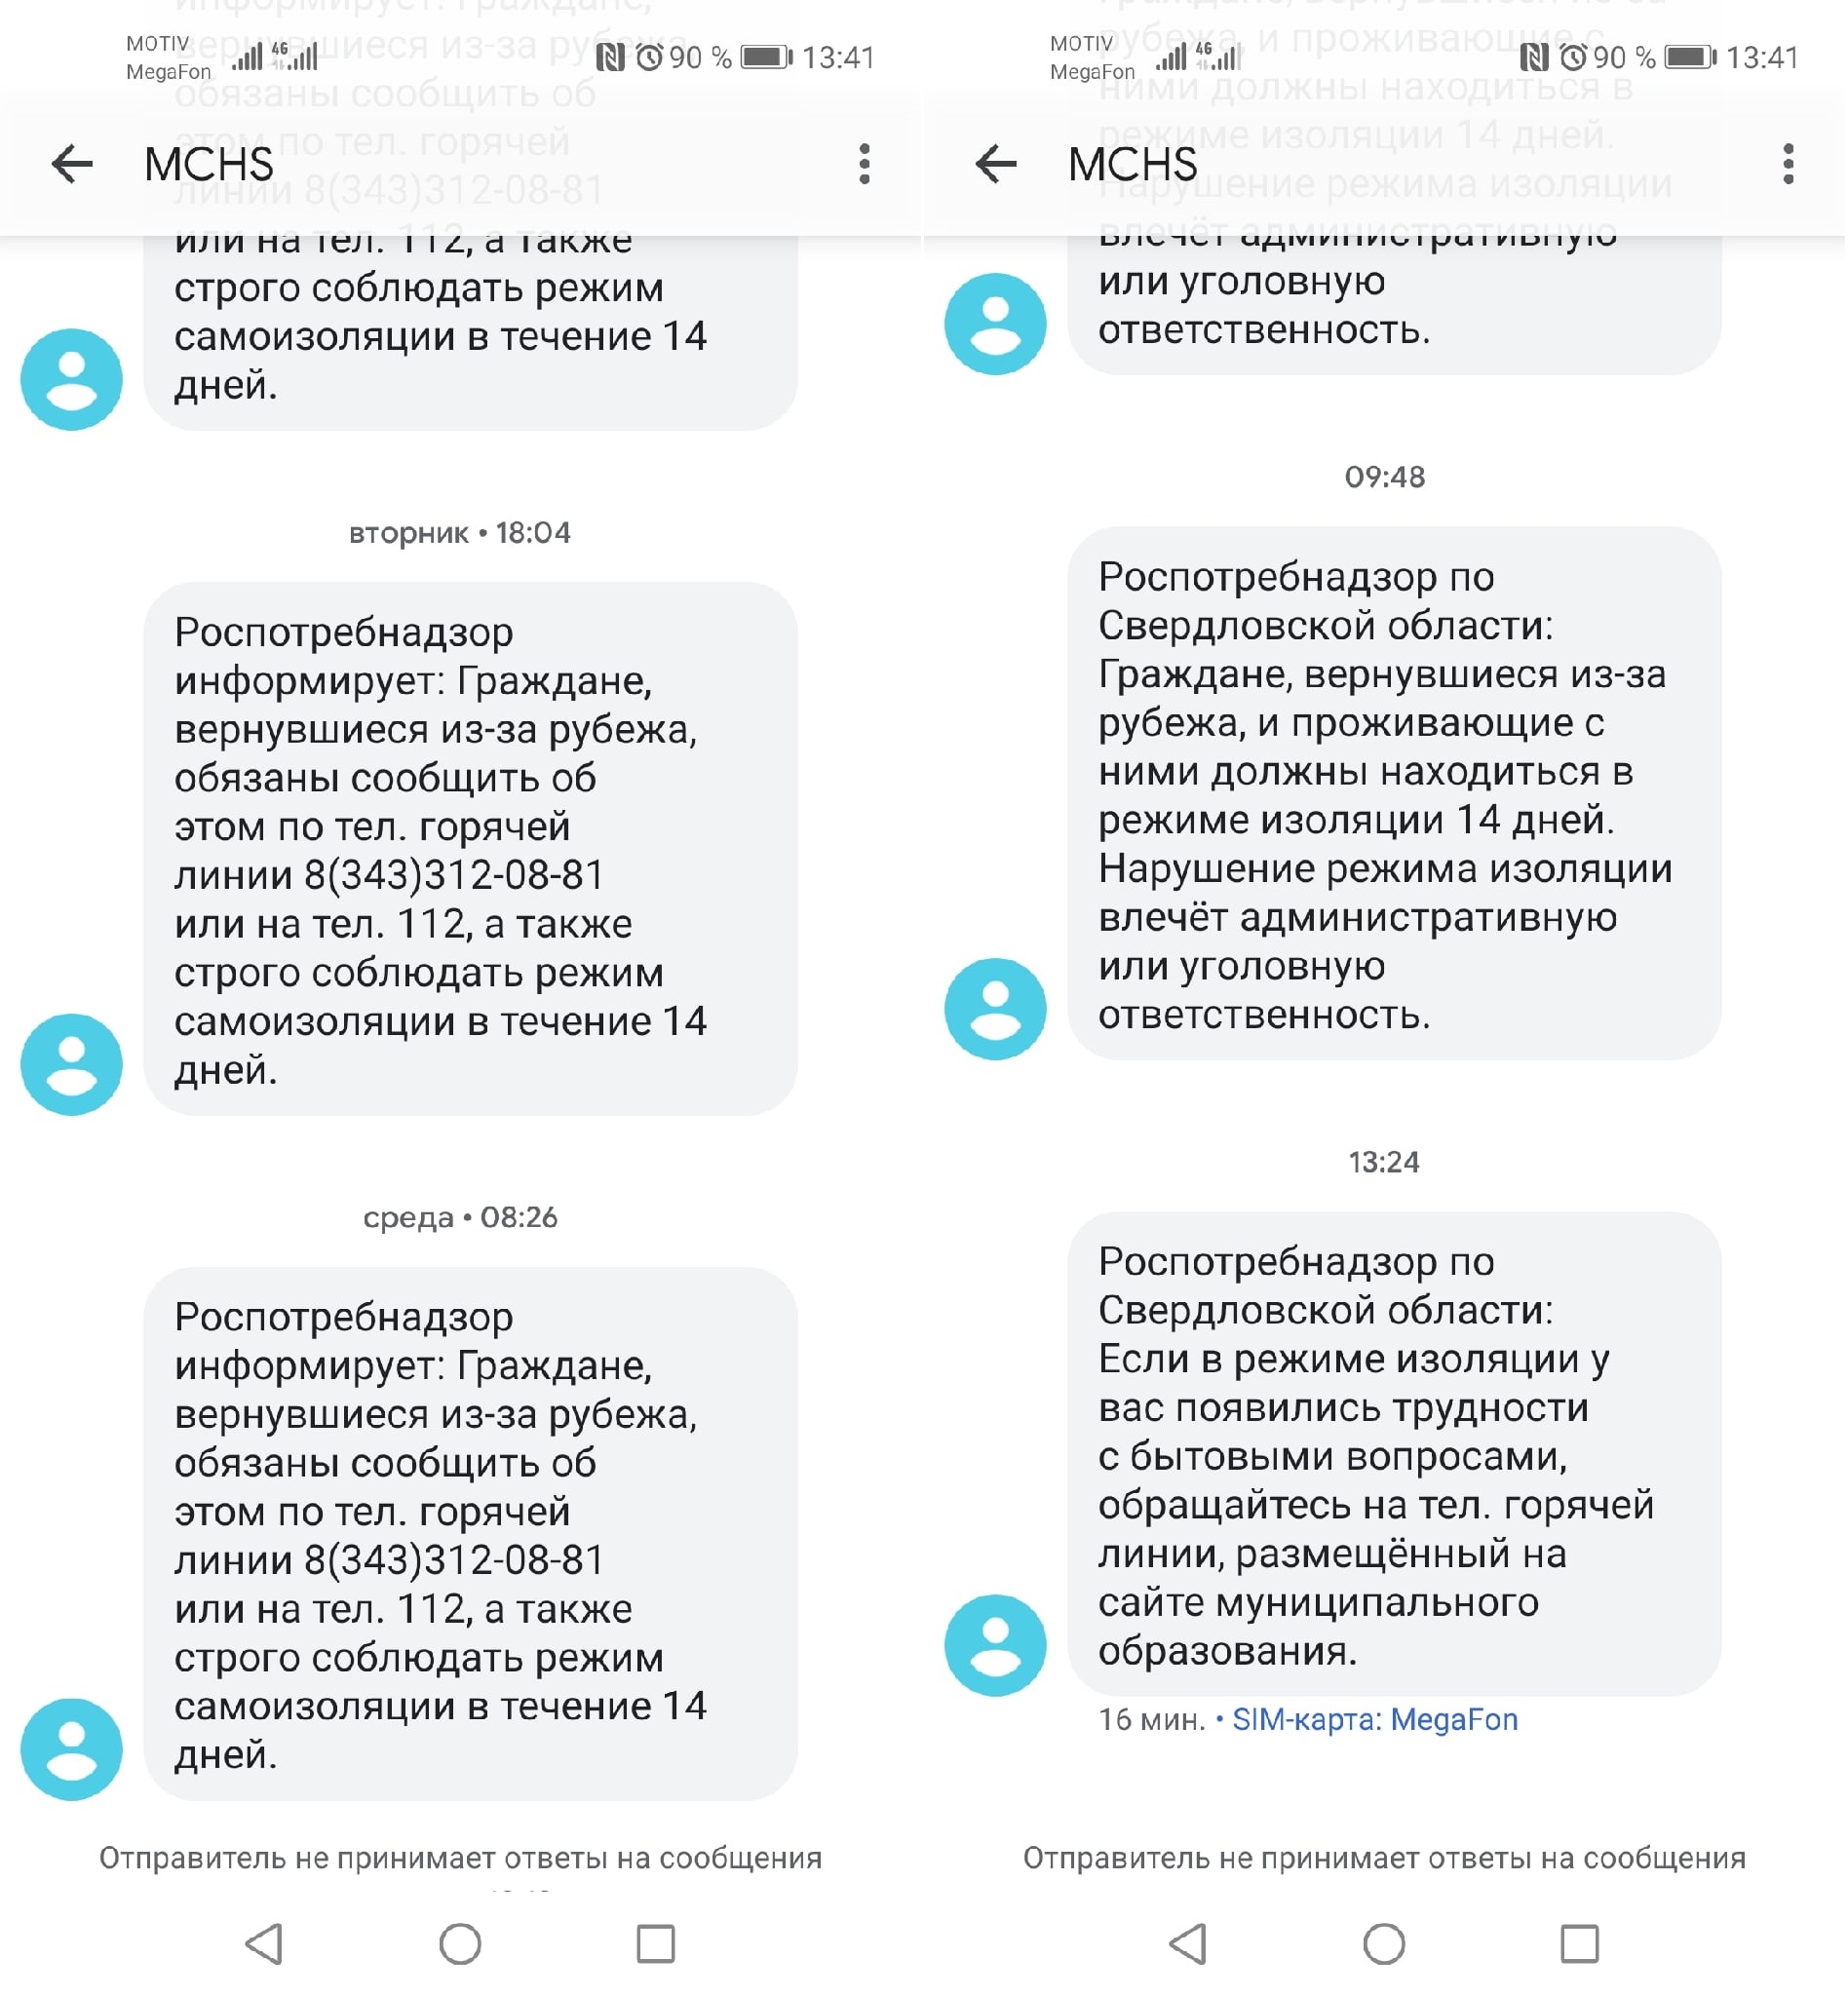 Как меняются SMS-сообщения от МЧС в связи с коронавирусом?